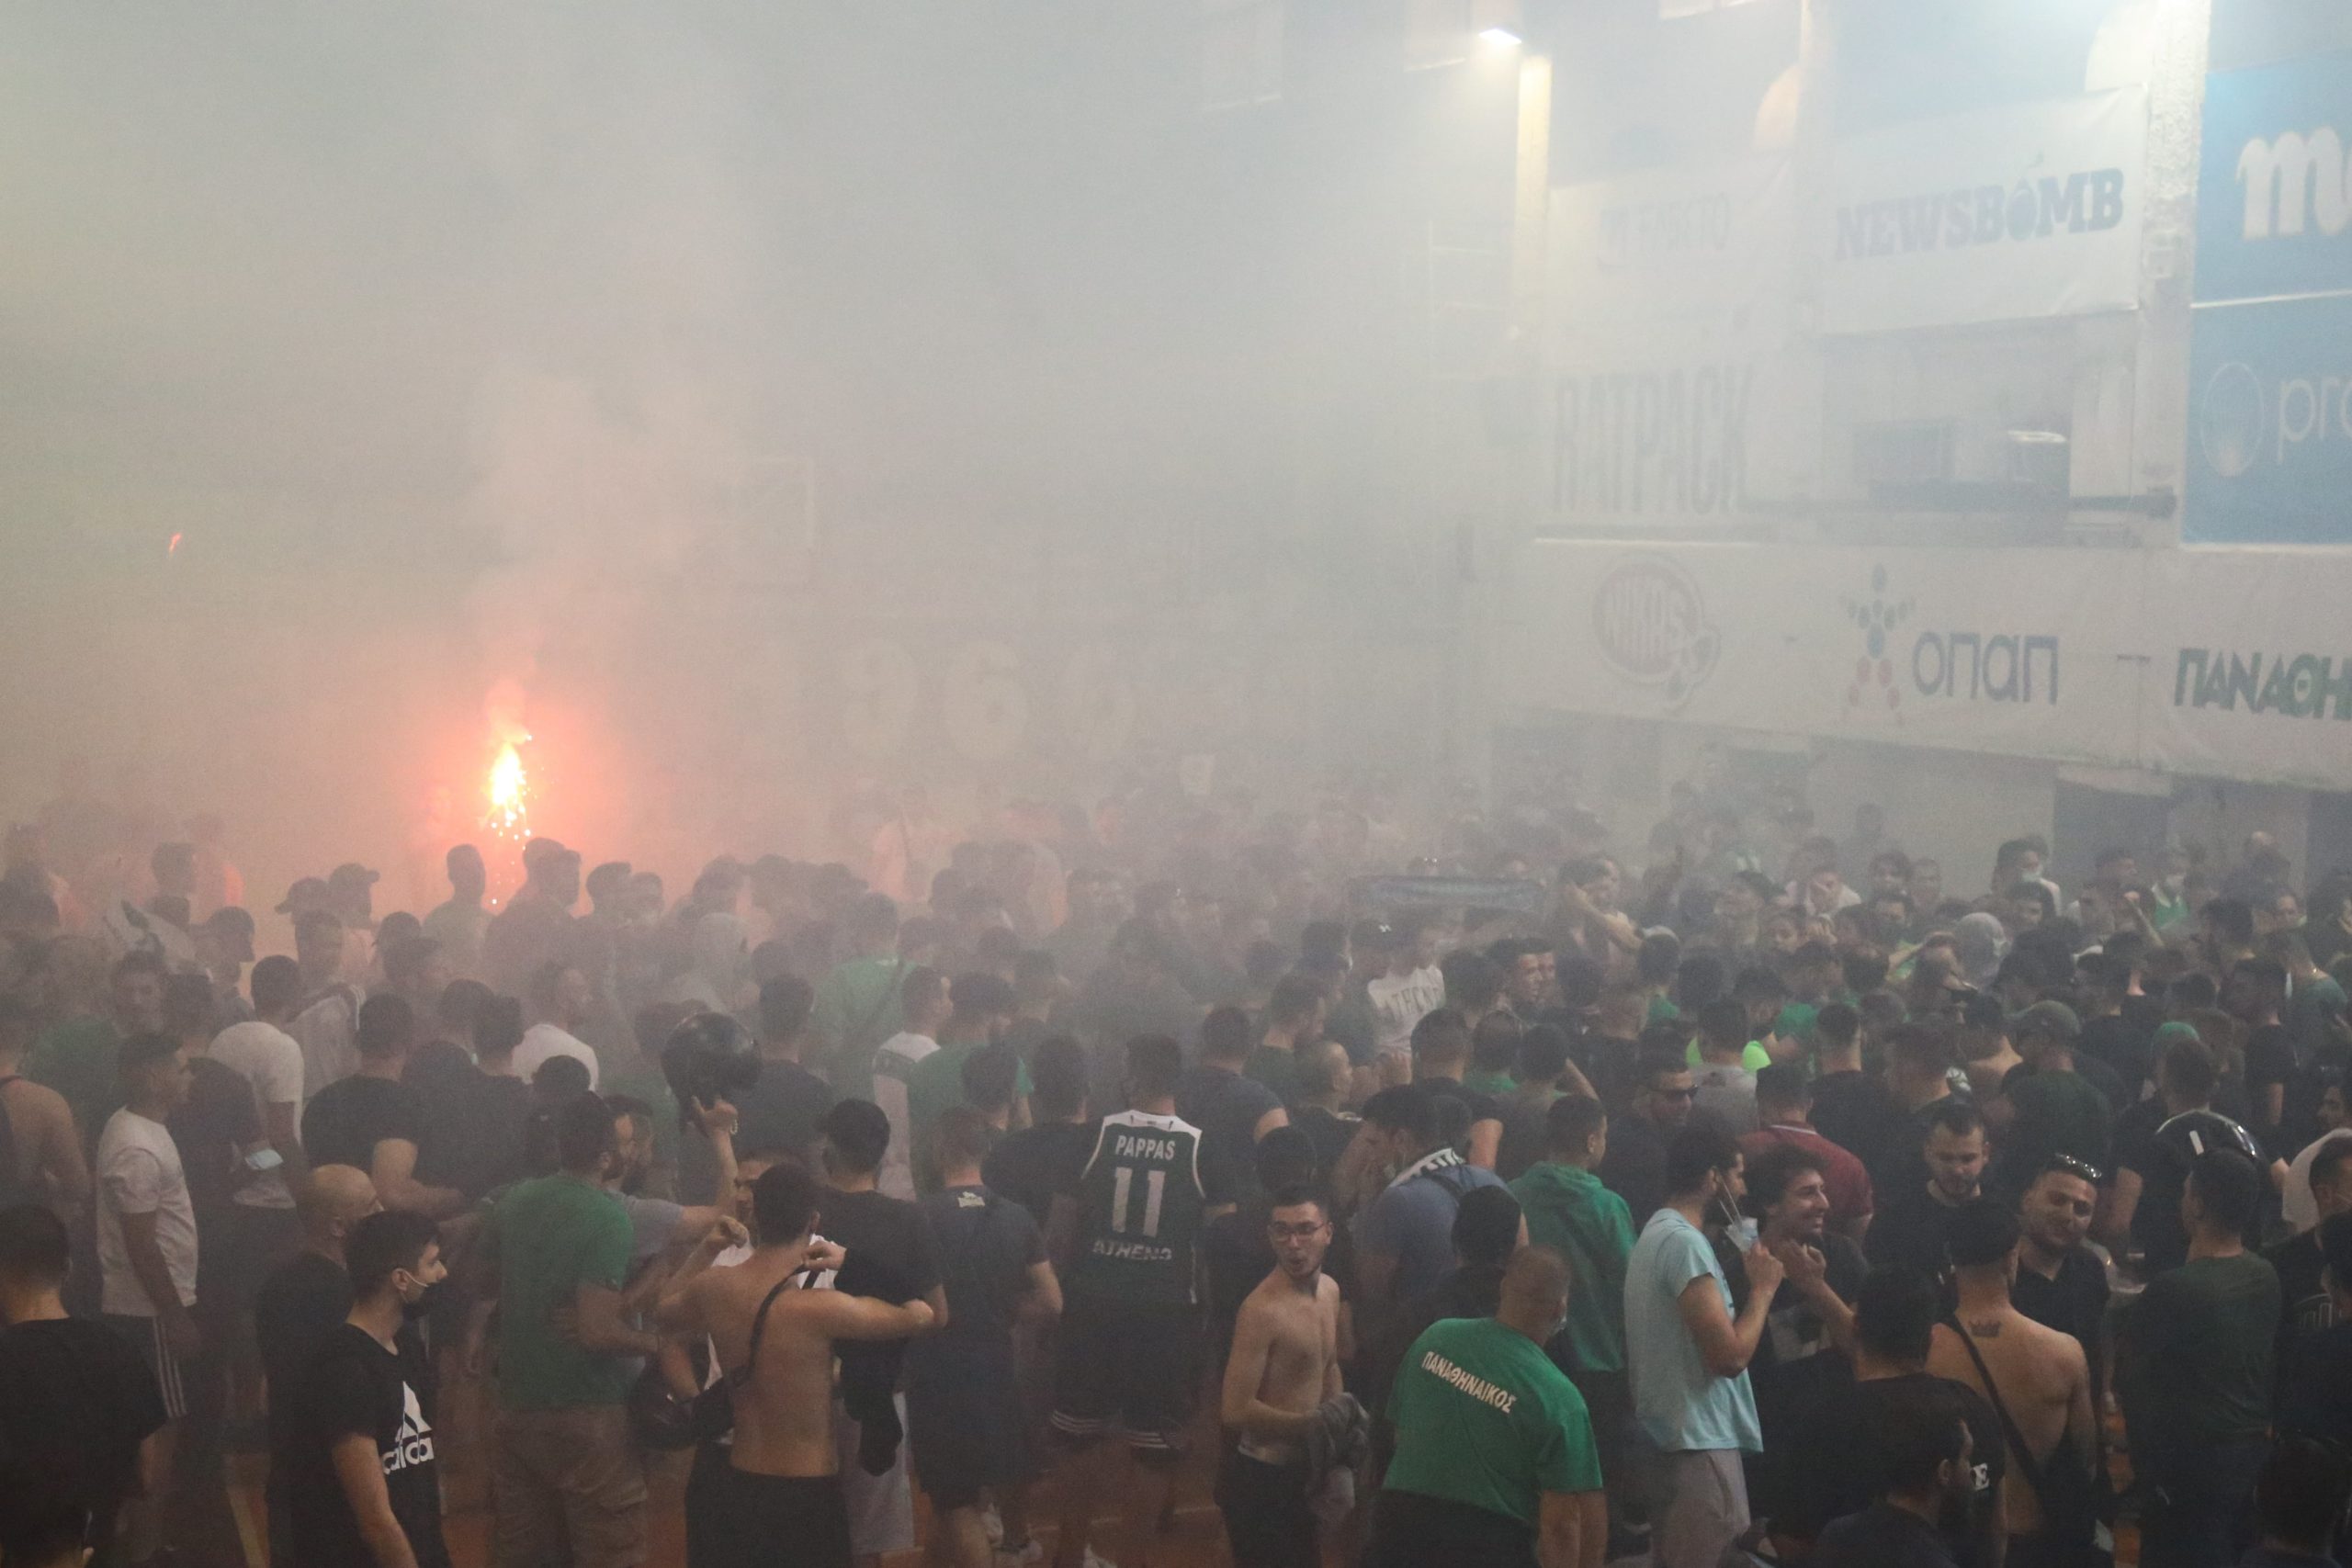 Ντελίριο στη Λεωφόρο, πάρτι τίτλου στο «Παύλος Γιαννακόπουλος» (εικόνες)